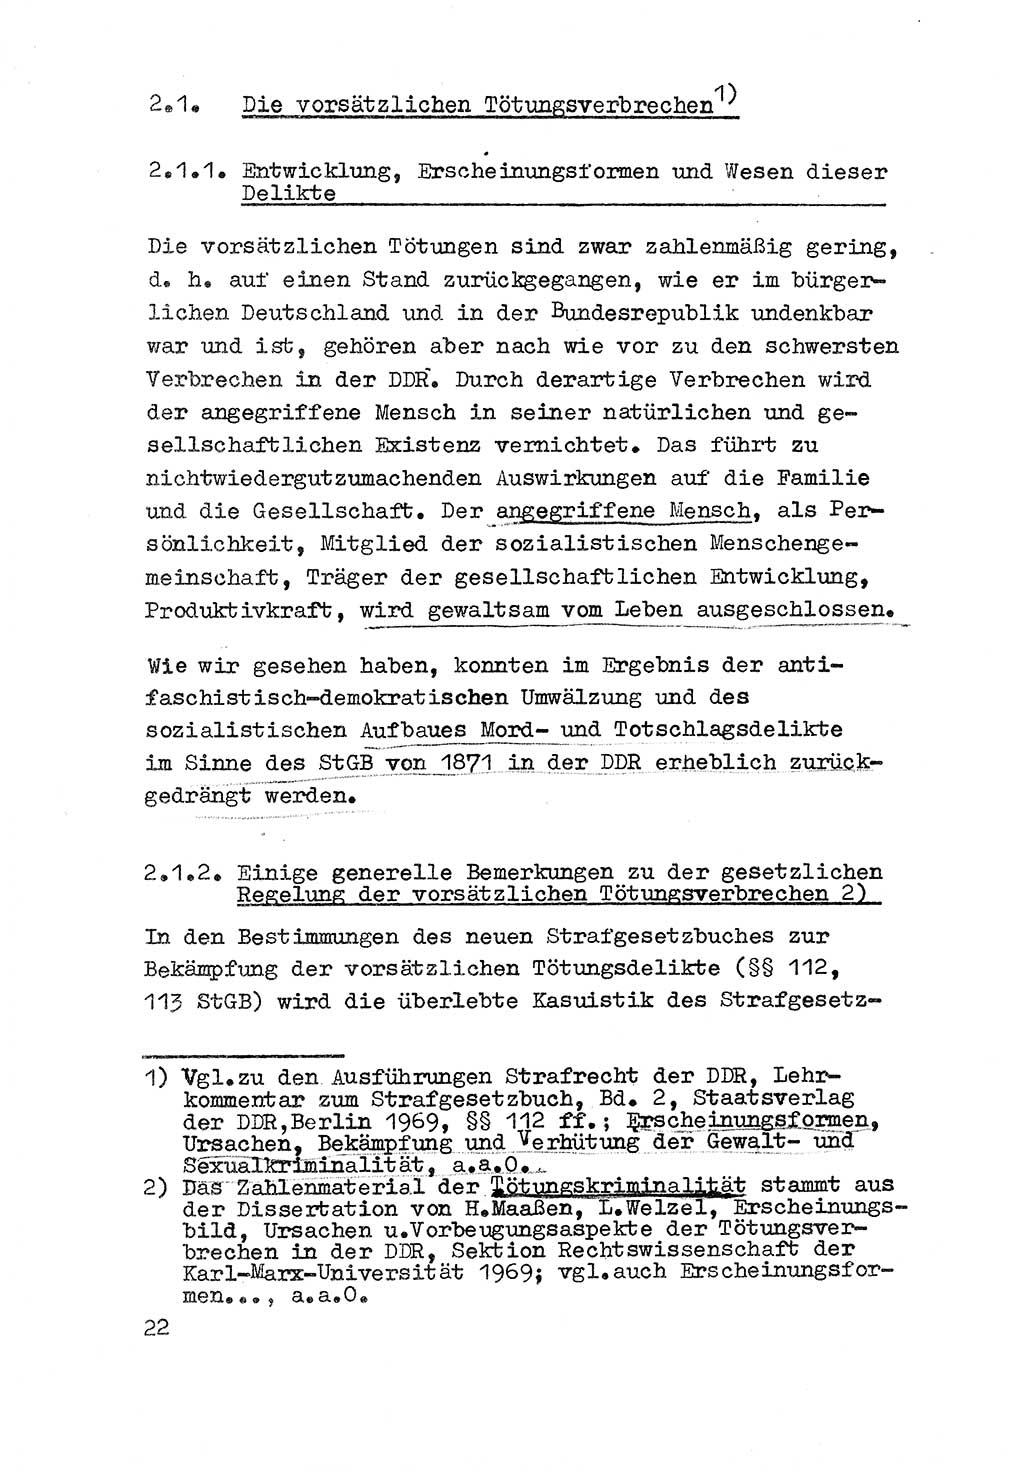 Strafrecht der DDR (Deutsche Demokratische Republik), Besonderer Teil, Lehrmaterial, Heft 3 1969, Seite 22 (Strafr. DDR BT Lehrmat. H. 3 1969, S. 22)